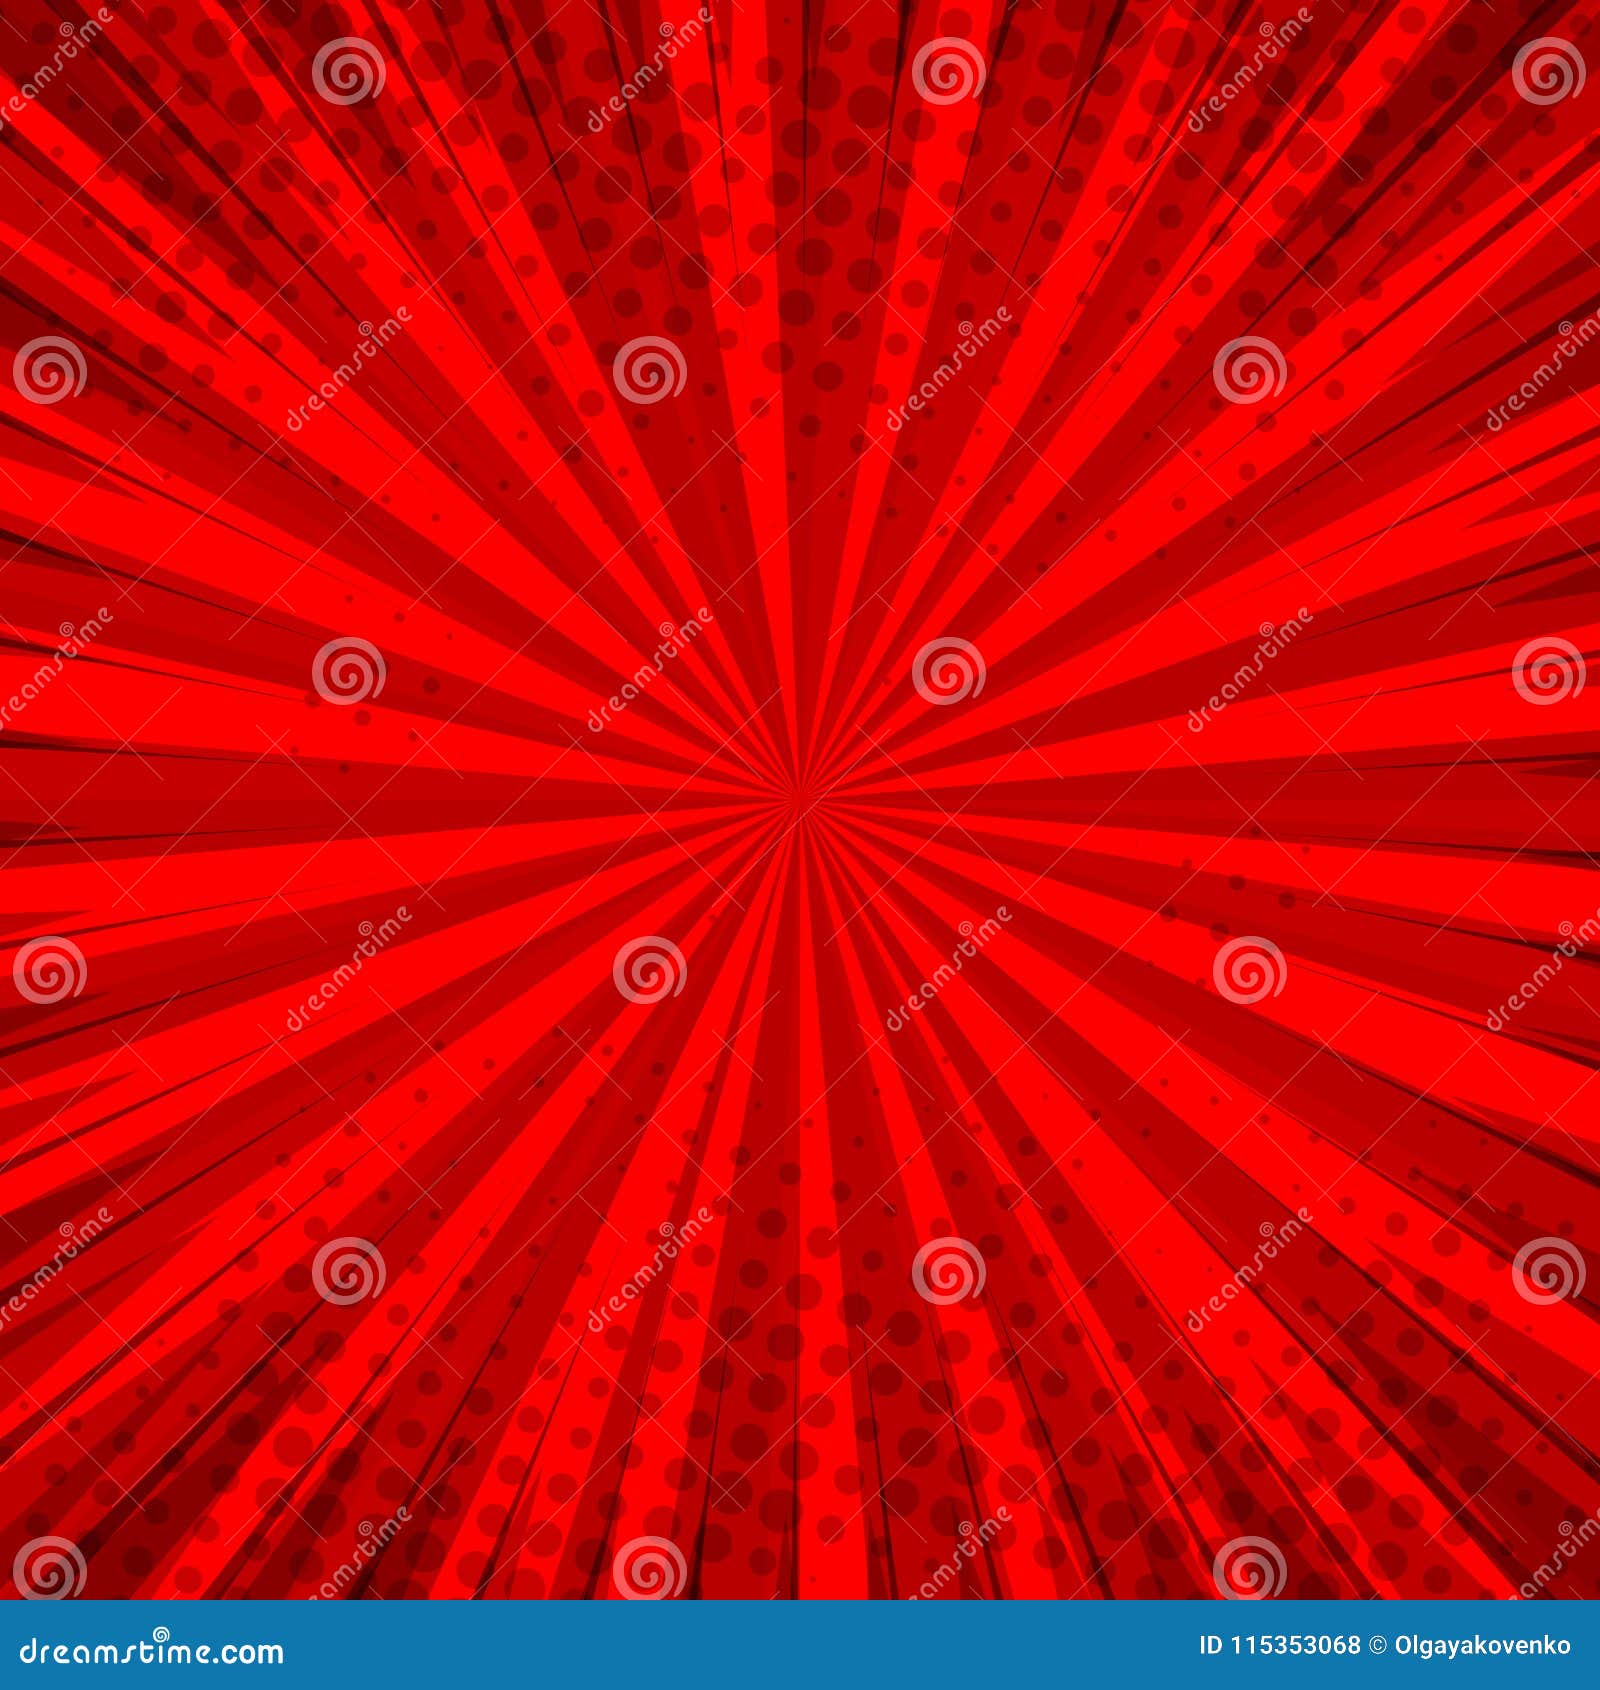 Nền đỏ kiểu pop art trừu tượng: Tạo ra một không gian sáng tạo và đầy phong cách với hình nền đỏ kiểu pop art trừu tượng này. Với sự kết hợp táo bạo giữa màu sắc và hình ảnh trừu tượng, bức hình này sẽ tạo ra một hiệu ứng mạnh mẽ trên màn hình của bạn. Hãy để nó giúp bạn nâng cao cảm hứng và sáng tạo trong công việc.